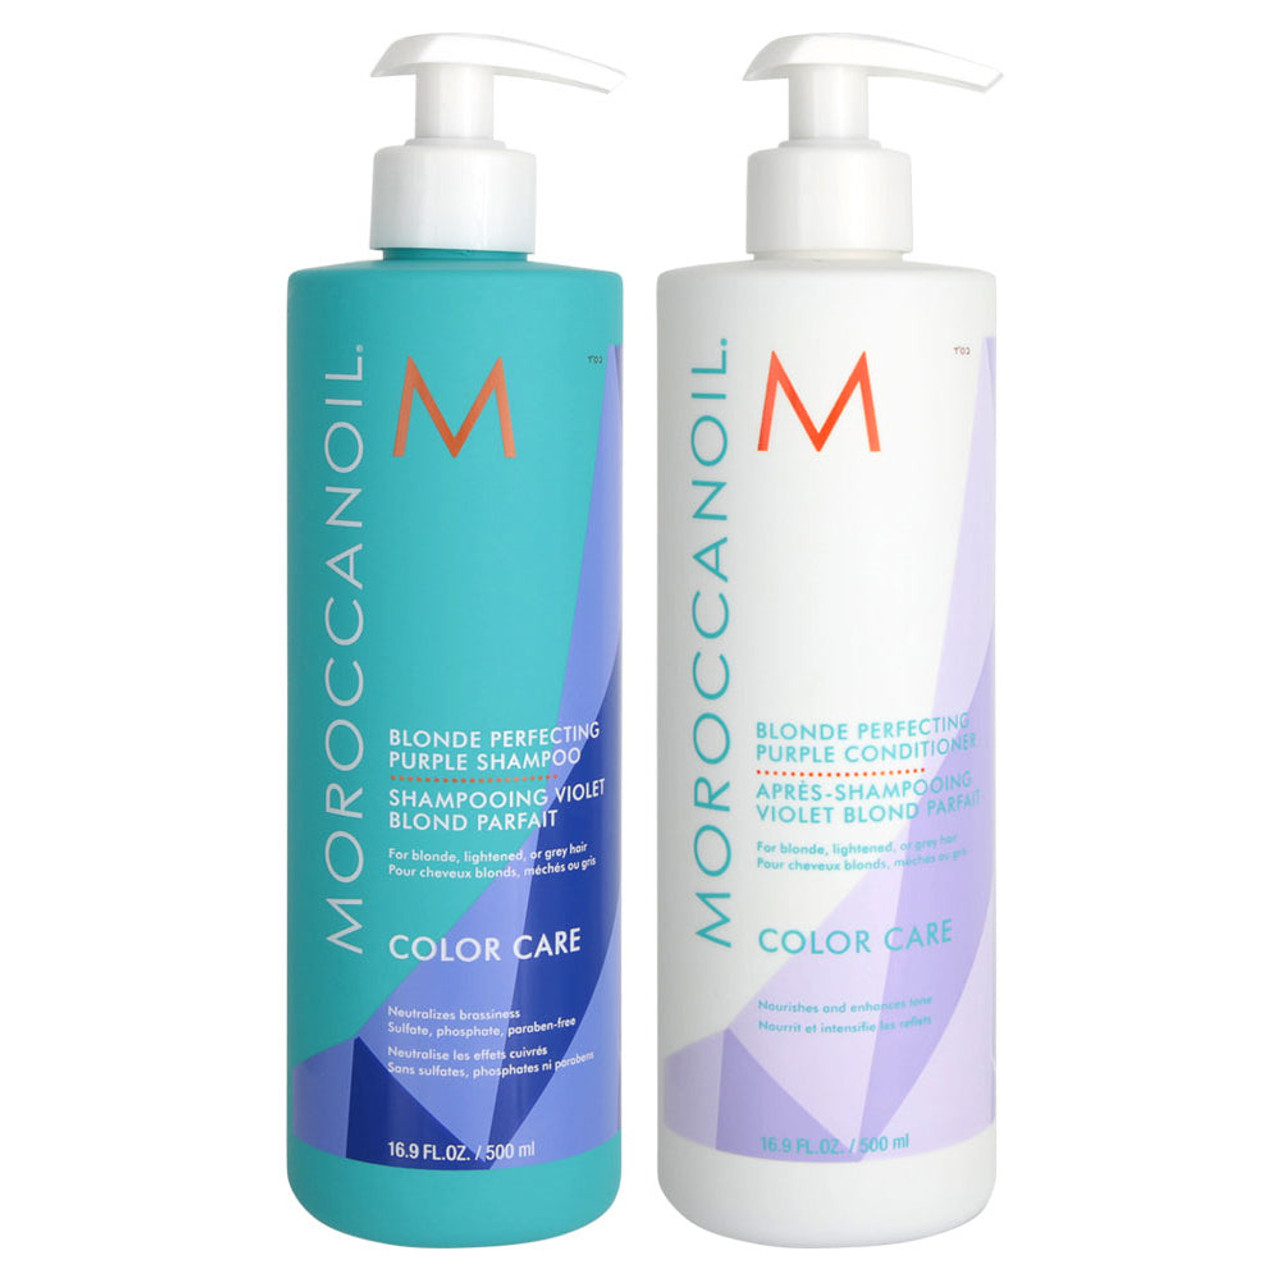 Moroccanoil Blonde Perfecting Shampoo & Conditioner Duo 16.9 fl oz.